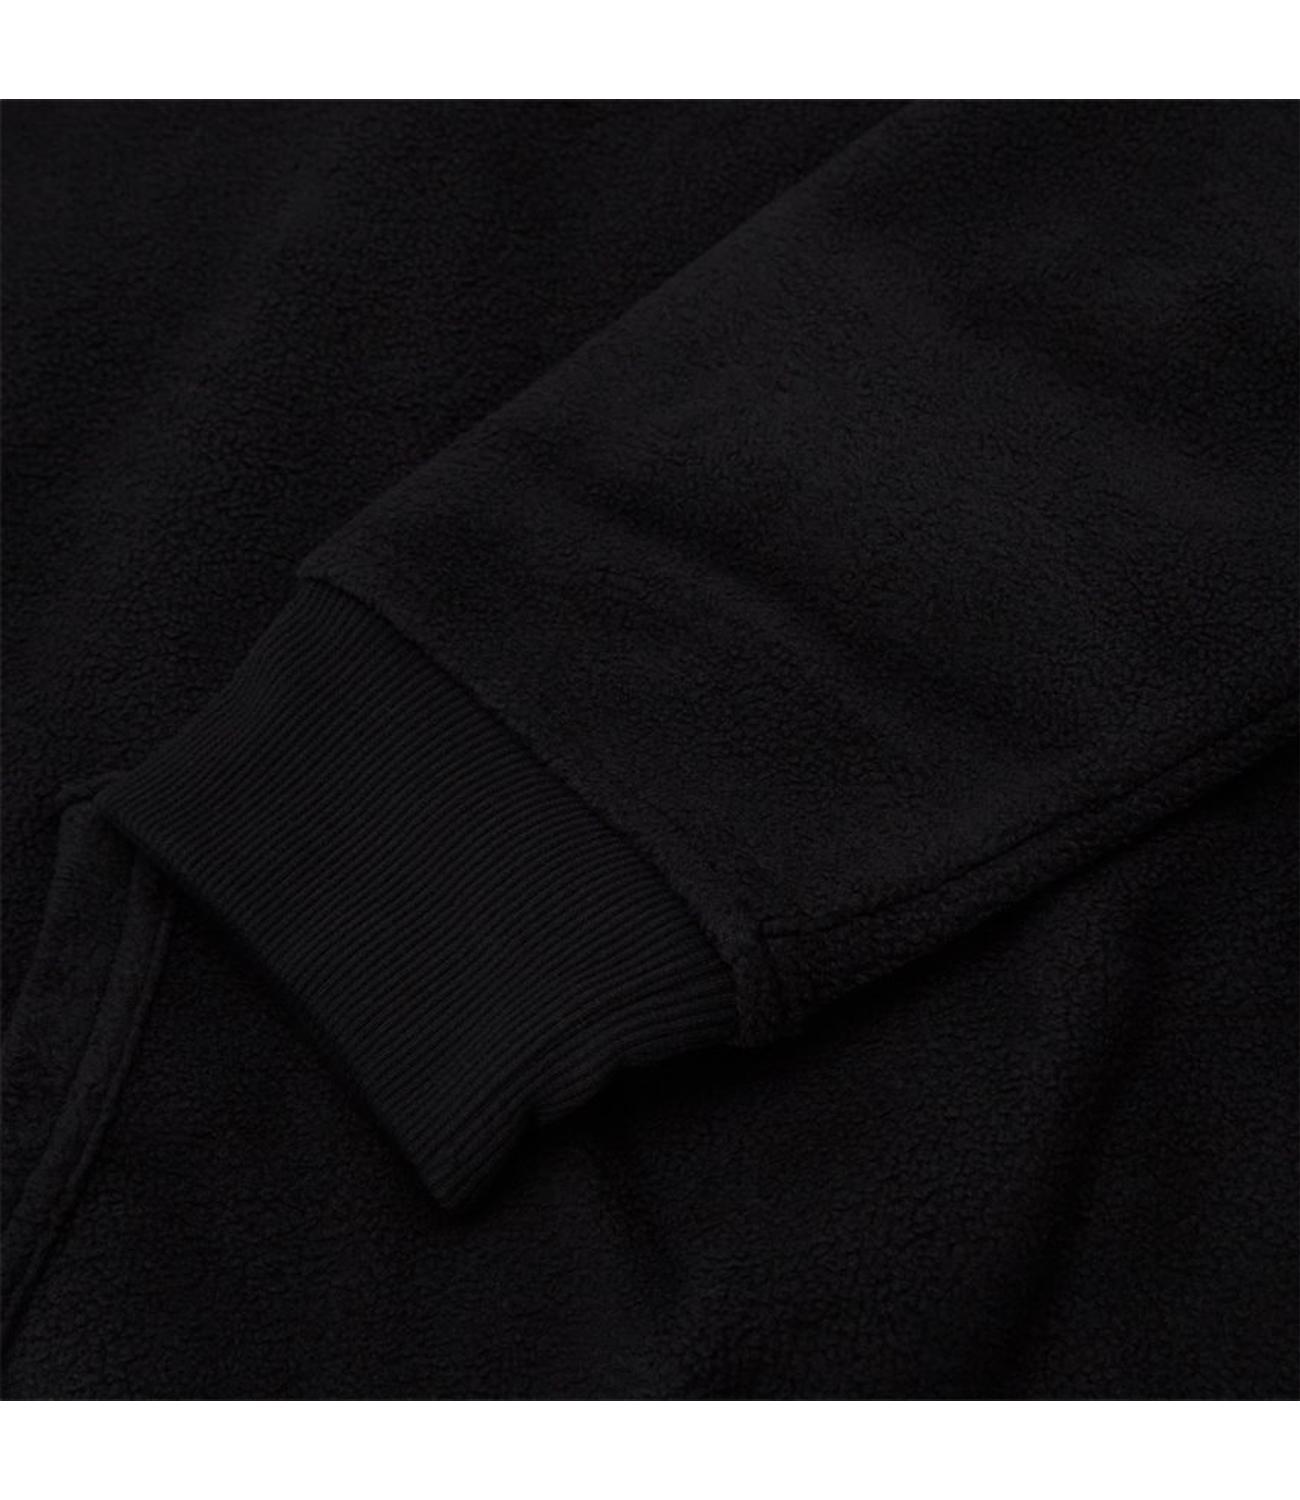 Polo Ralph Lauren men's black fleece sweatshirt SLEEP TOP HOODIE